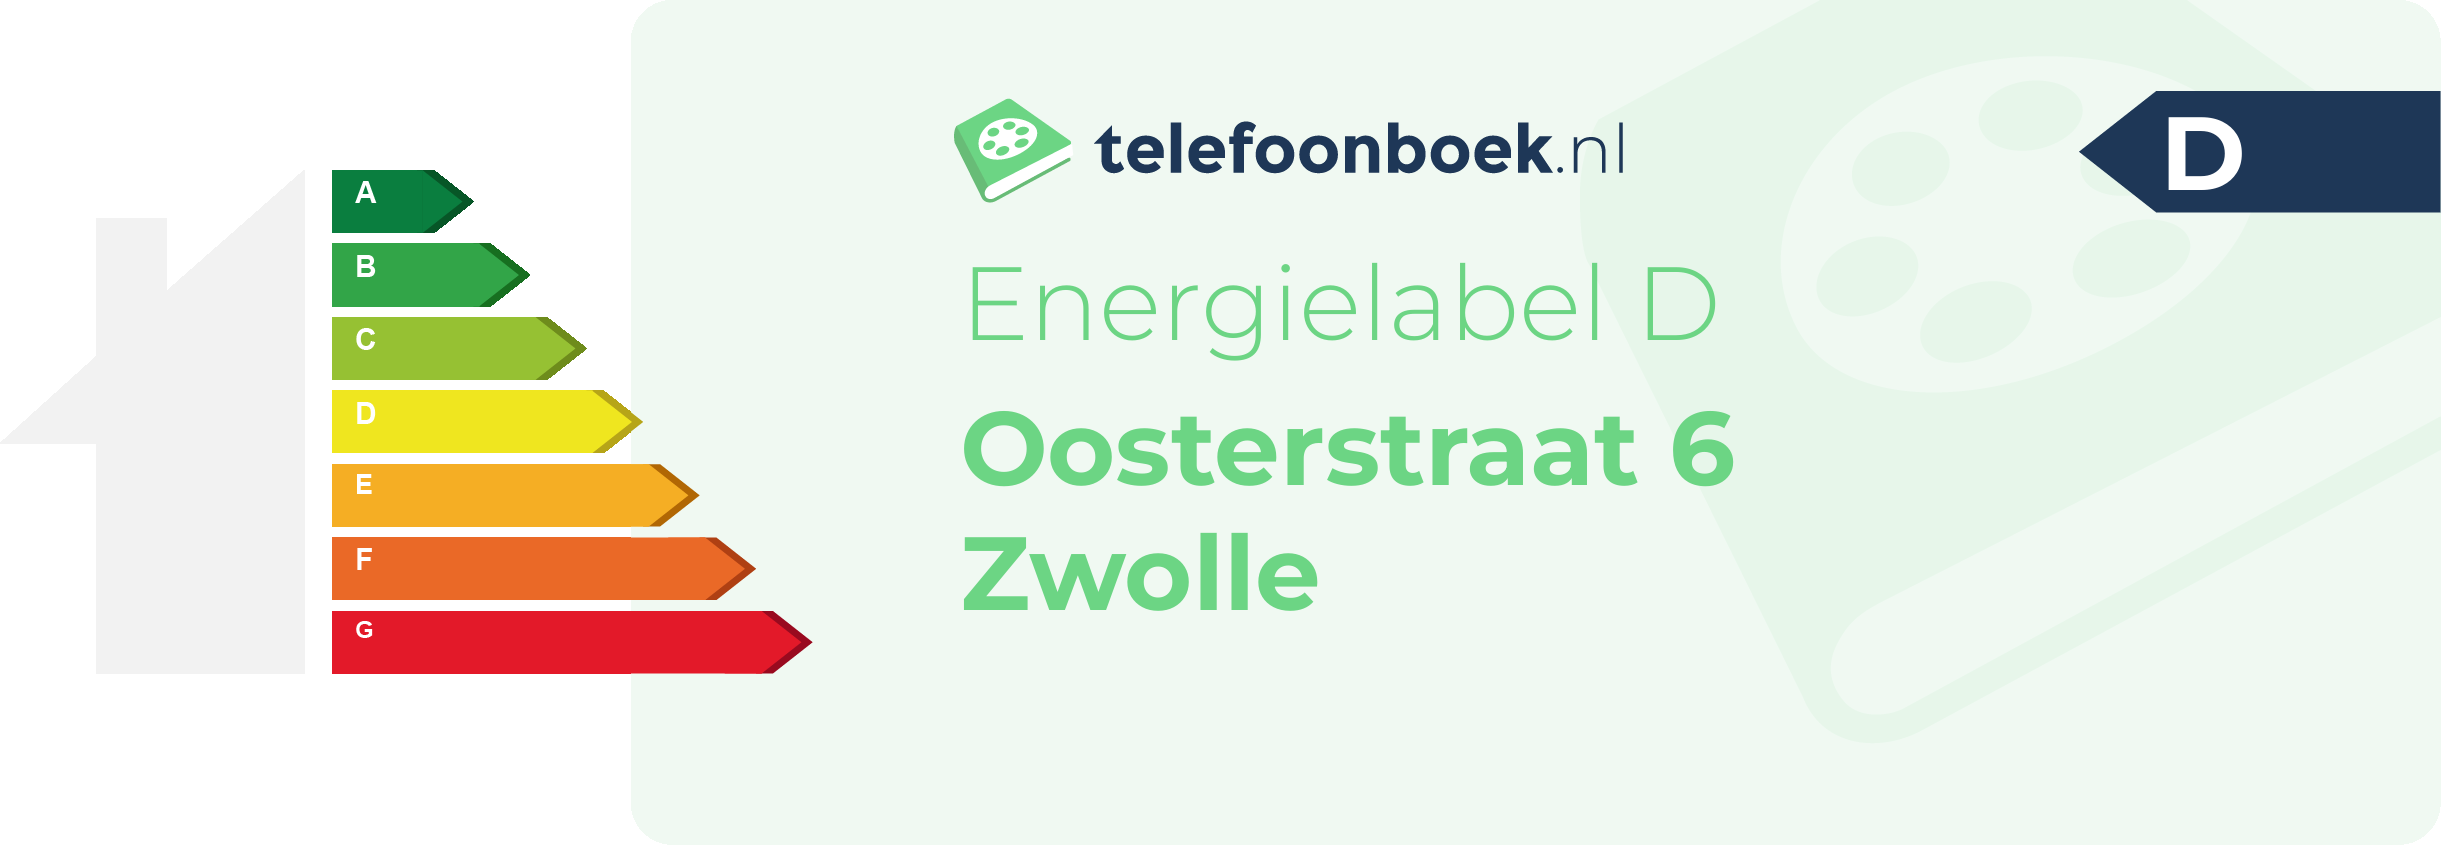 Energielabel Oosterstraat 6 Zwolle